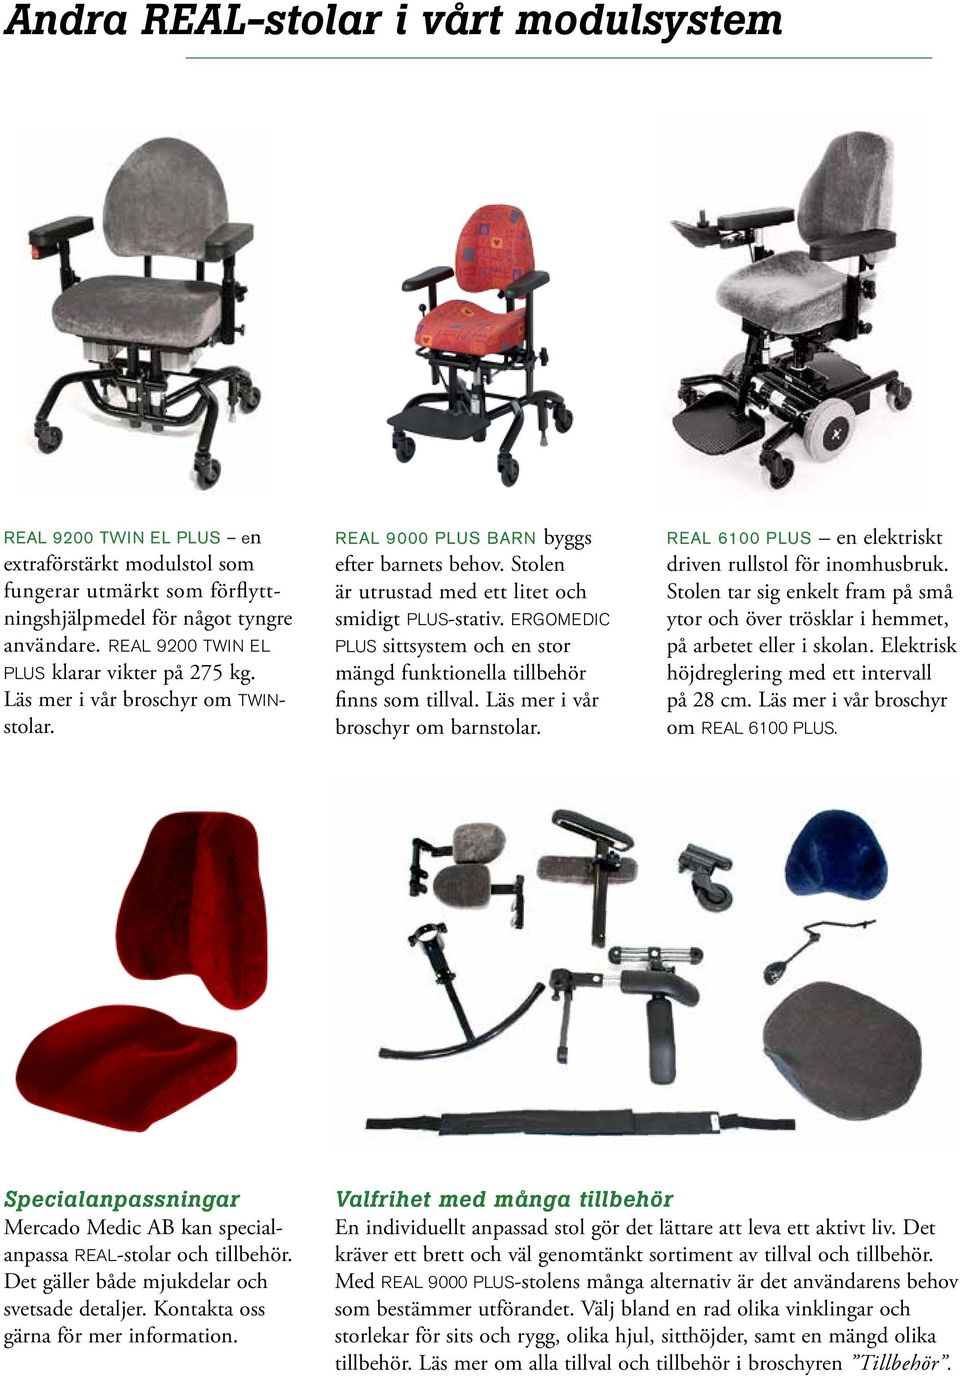 ERGOMEDIC PLUS sittsystem och en stor mängd funktionella tillbehör finns som tillval. Läs mer i vår broschyr om barnstolar. REAL 6100 PLUS en elektriskt driven rullstol för inomhusbruk.